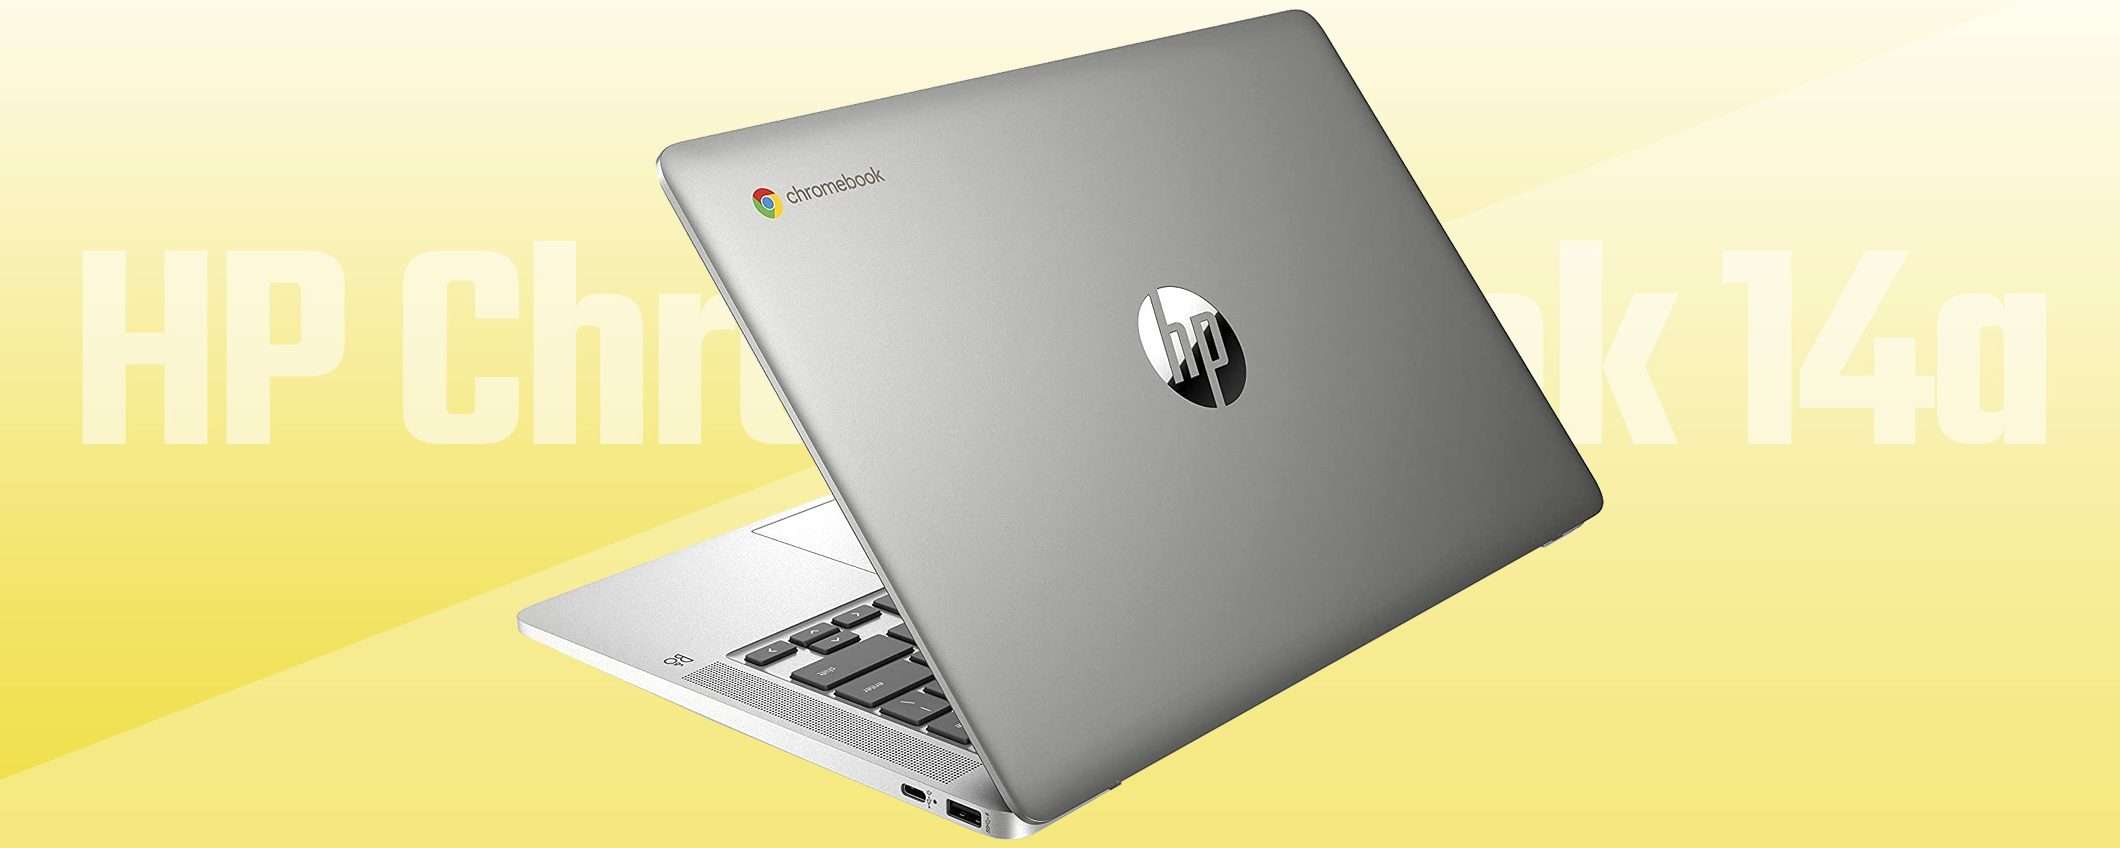 Solo 219€ per il Chromebook di HP: lo vende Amazon